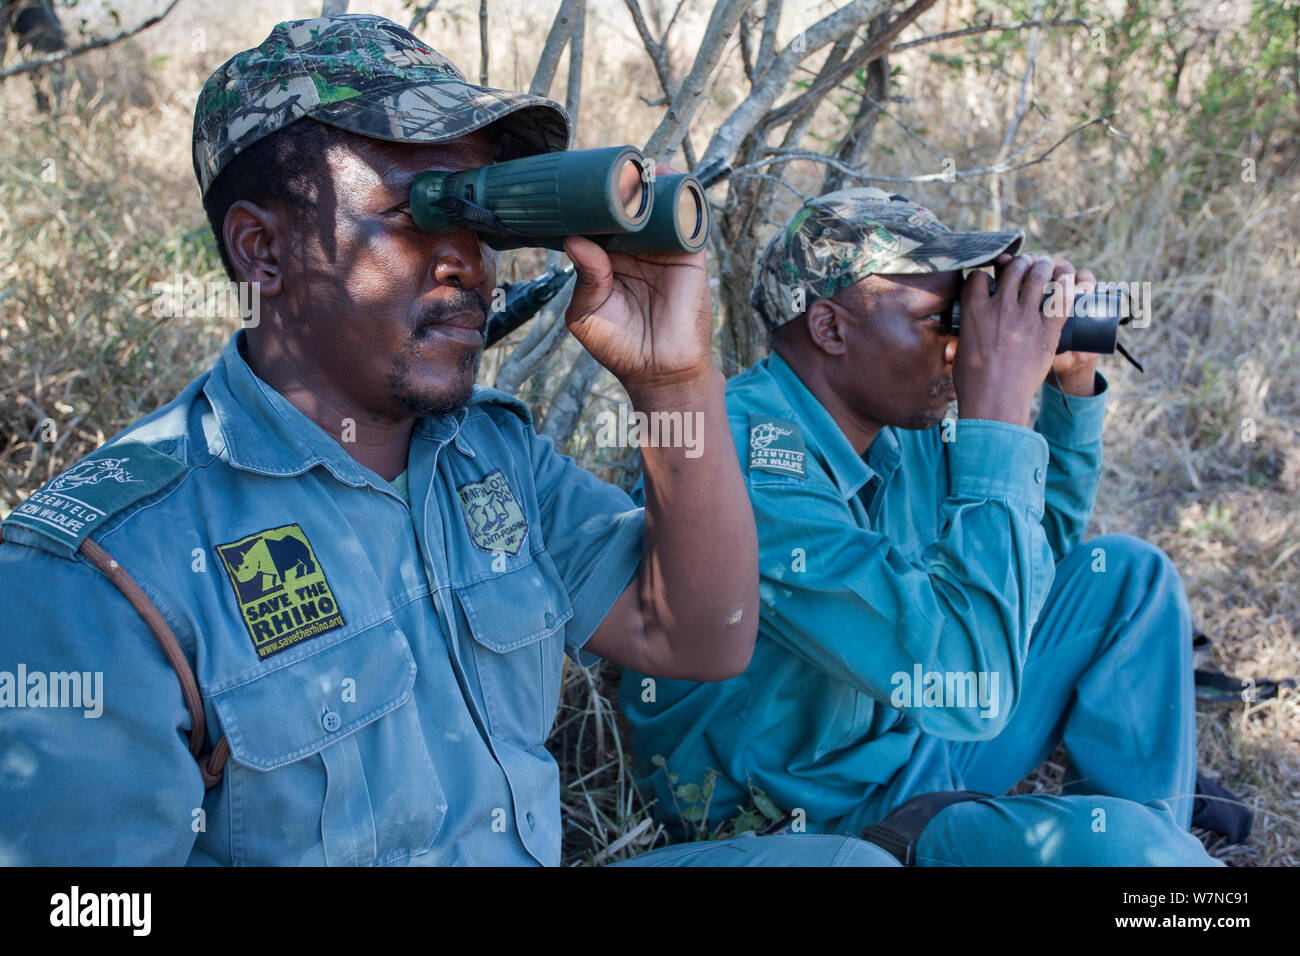 Anti-poaching unit on patrol in the bush, l-rSibusiso Mdluli, Sibongiseni Kunene, Ezemvelo KZN Wildlife, iMfolozi game reserve, KwaZulu-Natal, South Africa, June 2012. Editorial use only Stock Photo